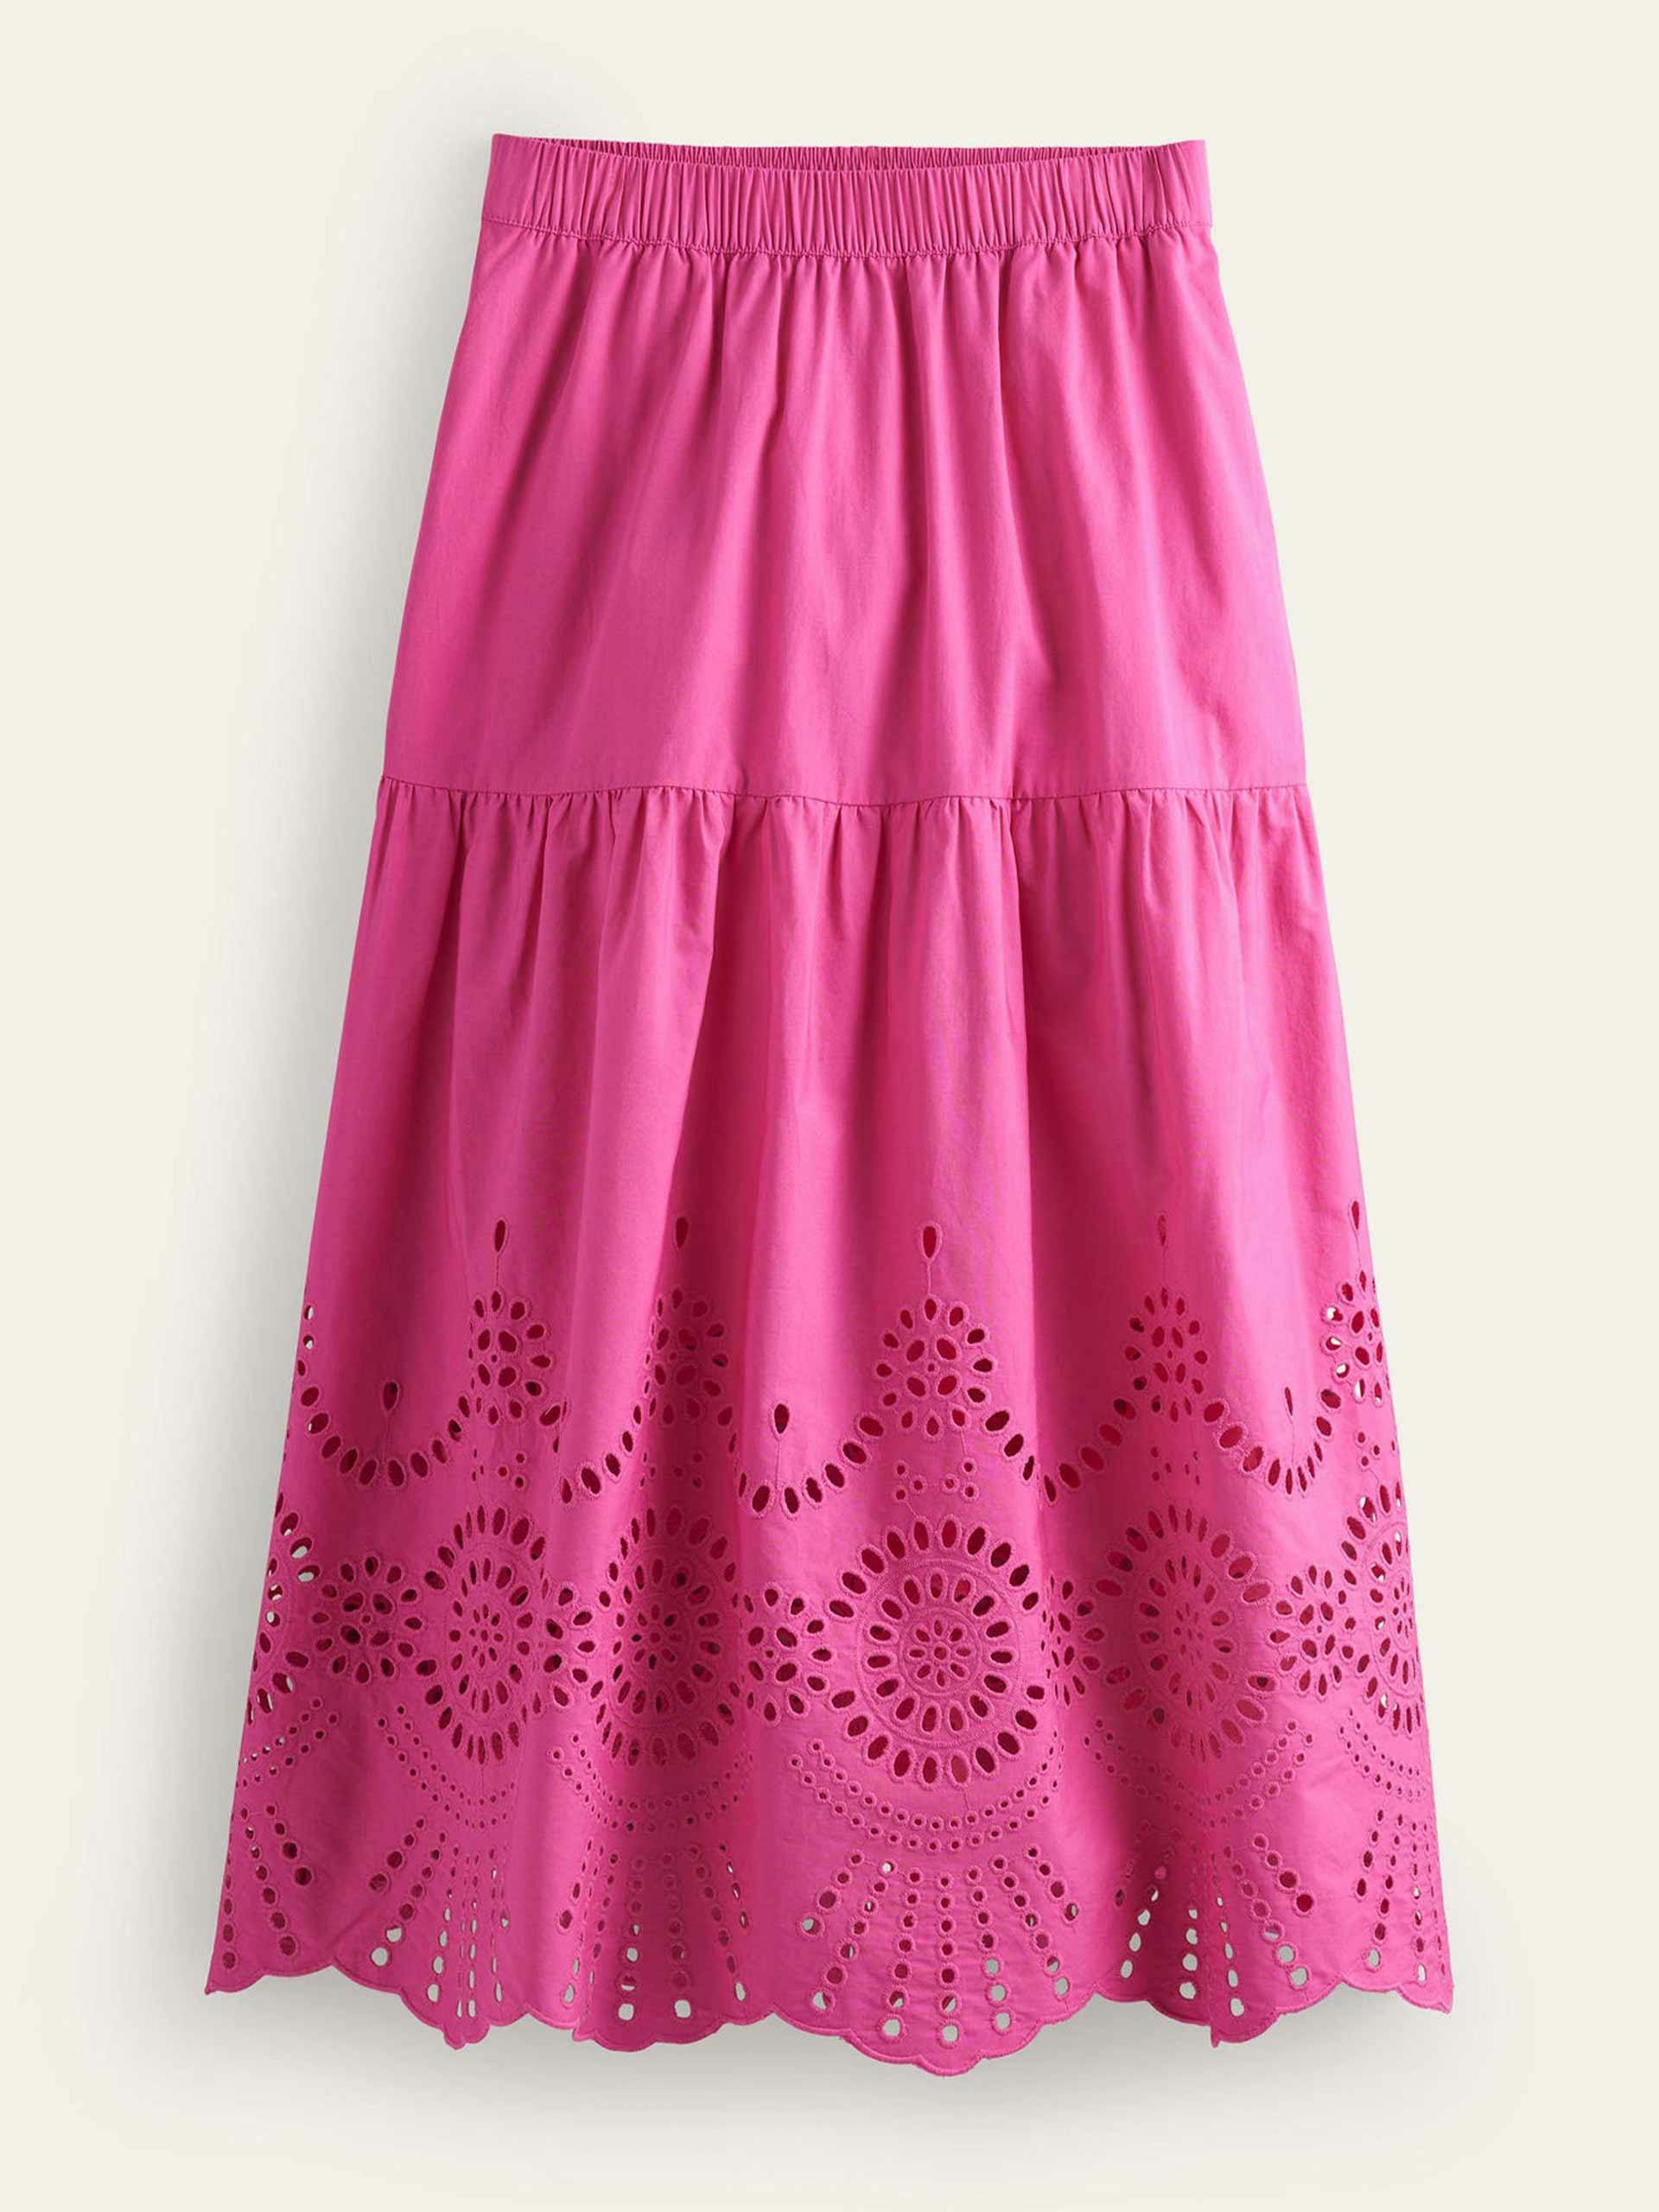 Full broderie skirt in festival pink